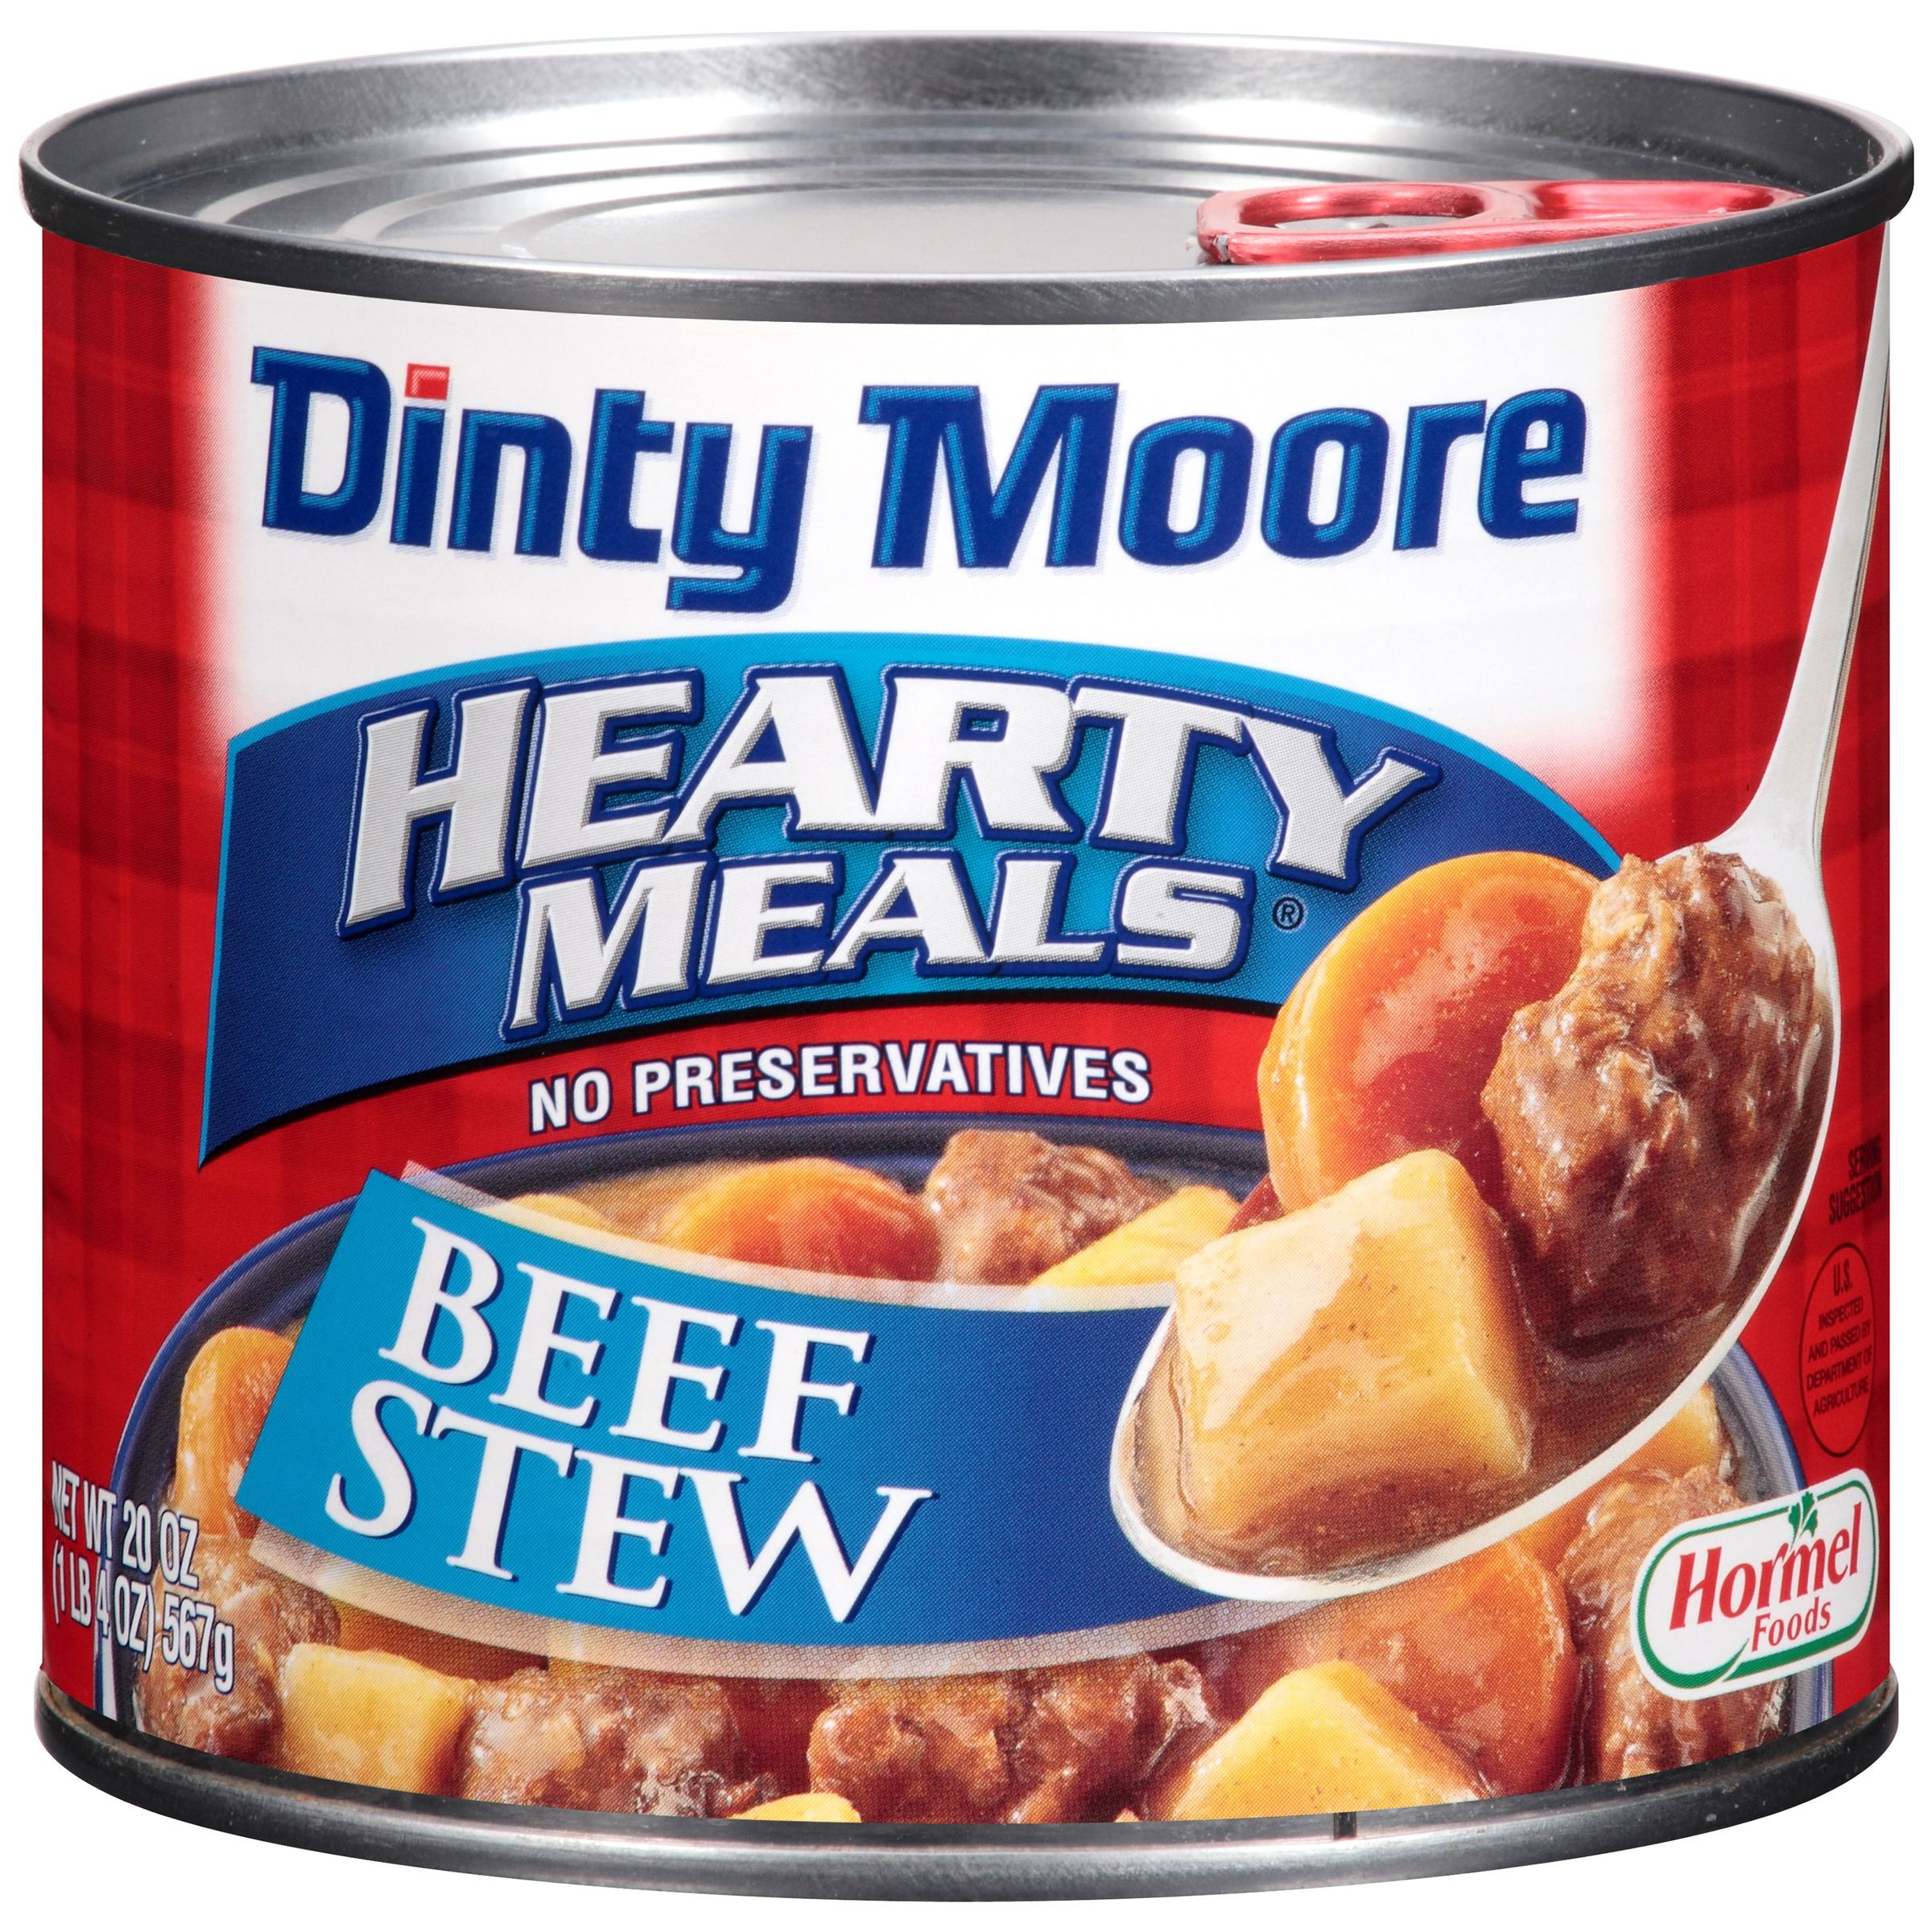 Dinty Moore Beef Stew
 Dinty Moore Beef Stew